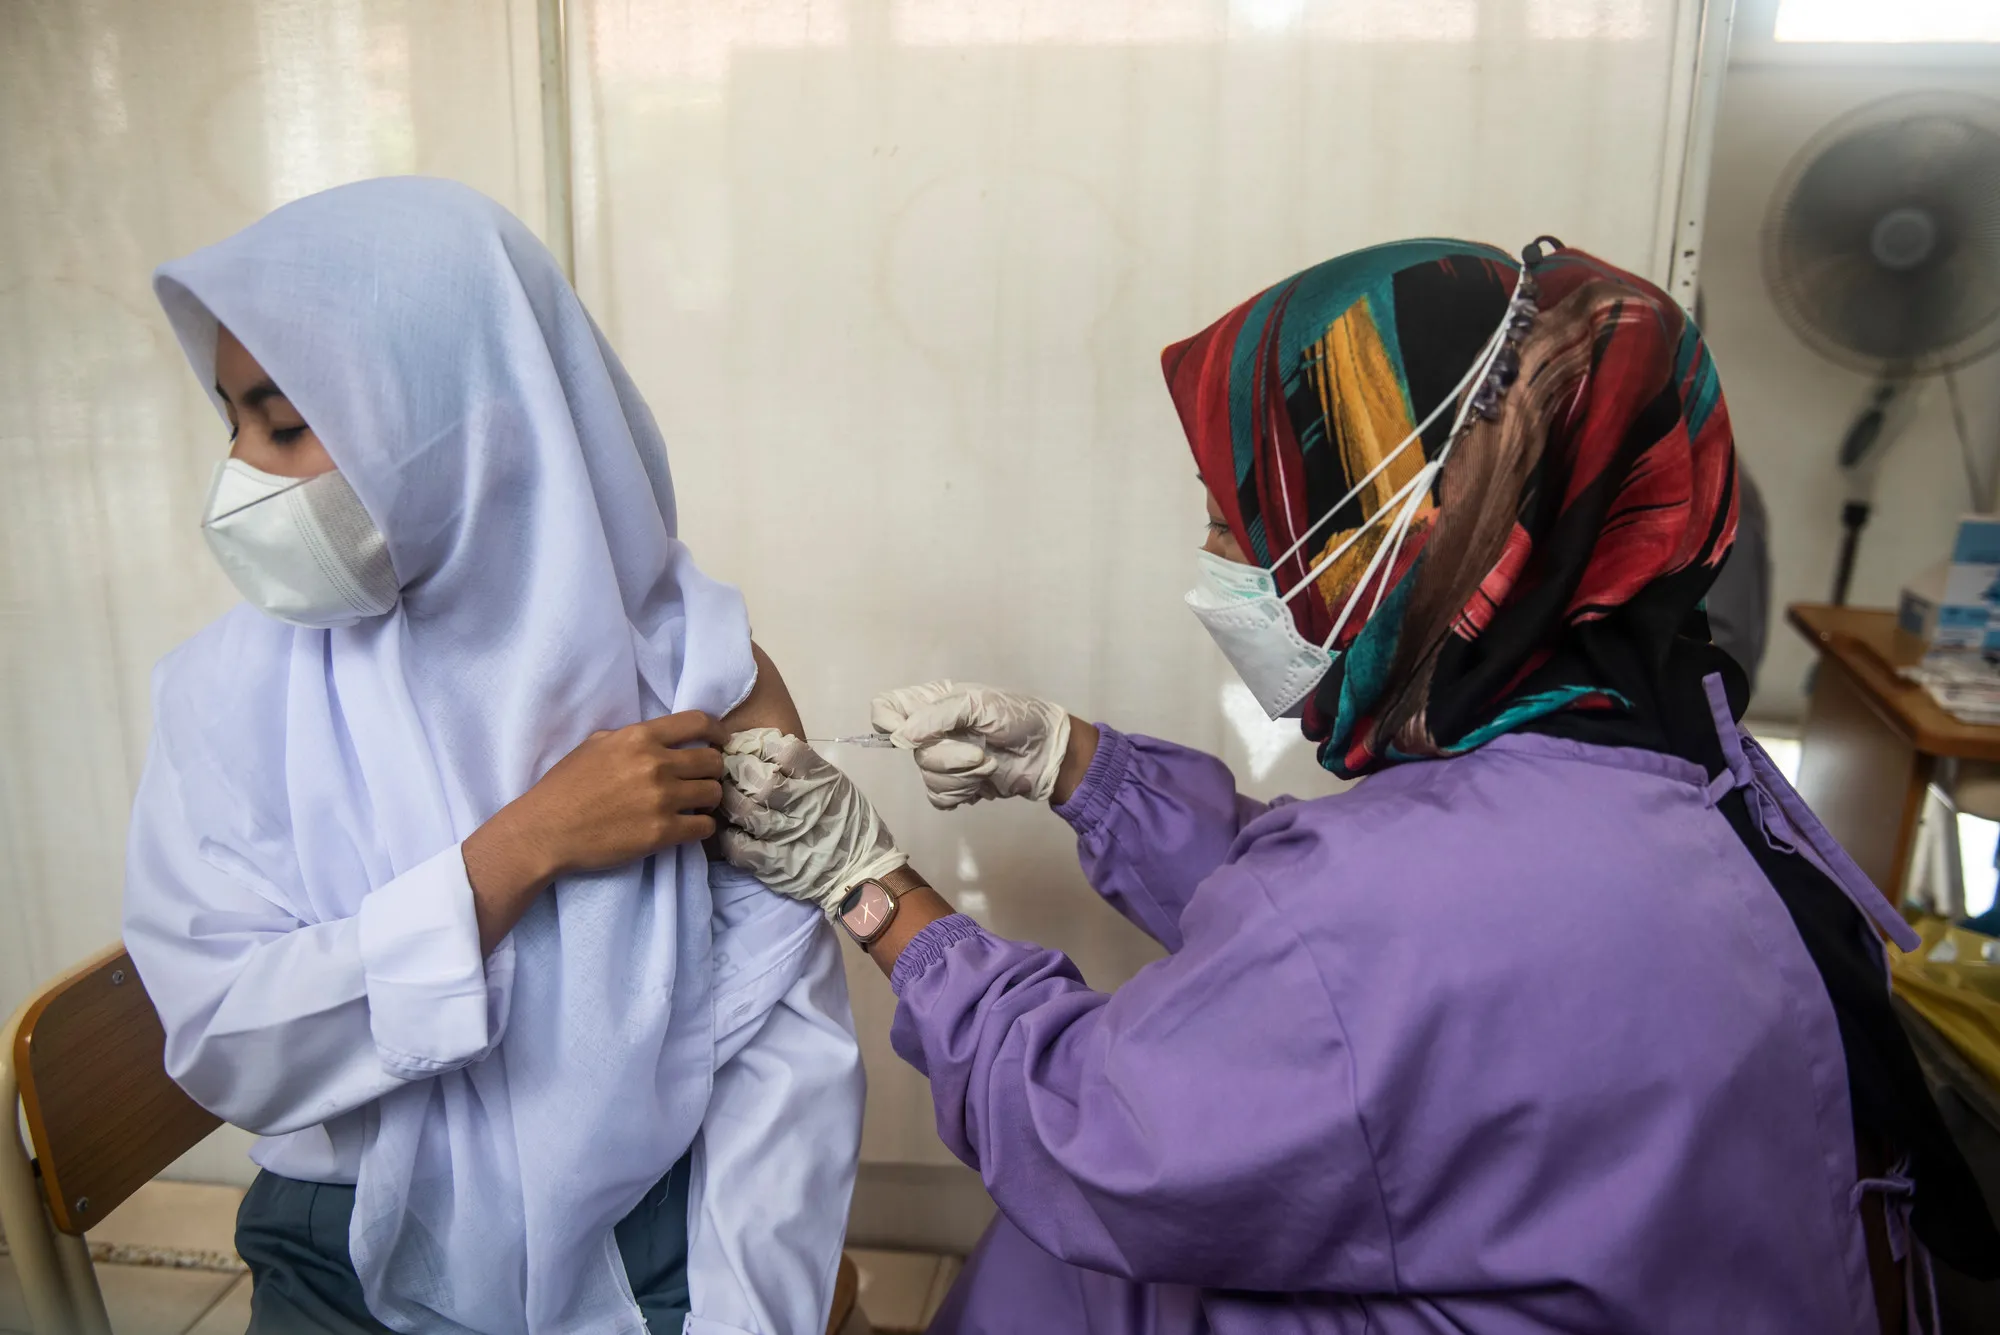 Um trabalhador de saúde injeta a vacina em alunos durante o programa de vacinação na Escola Secundária Pública Cinangka, Serang, Banten, Indonésia, segunda-feira, 9 de agosto de 2021. Os alunos precisam trazer uma carta de permissão de seus pais para serem vacinados.